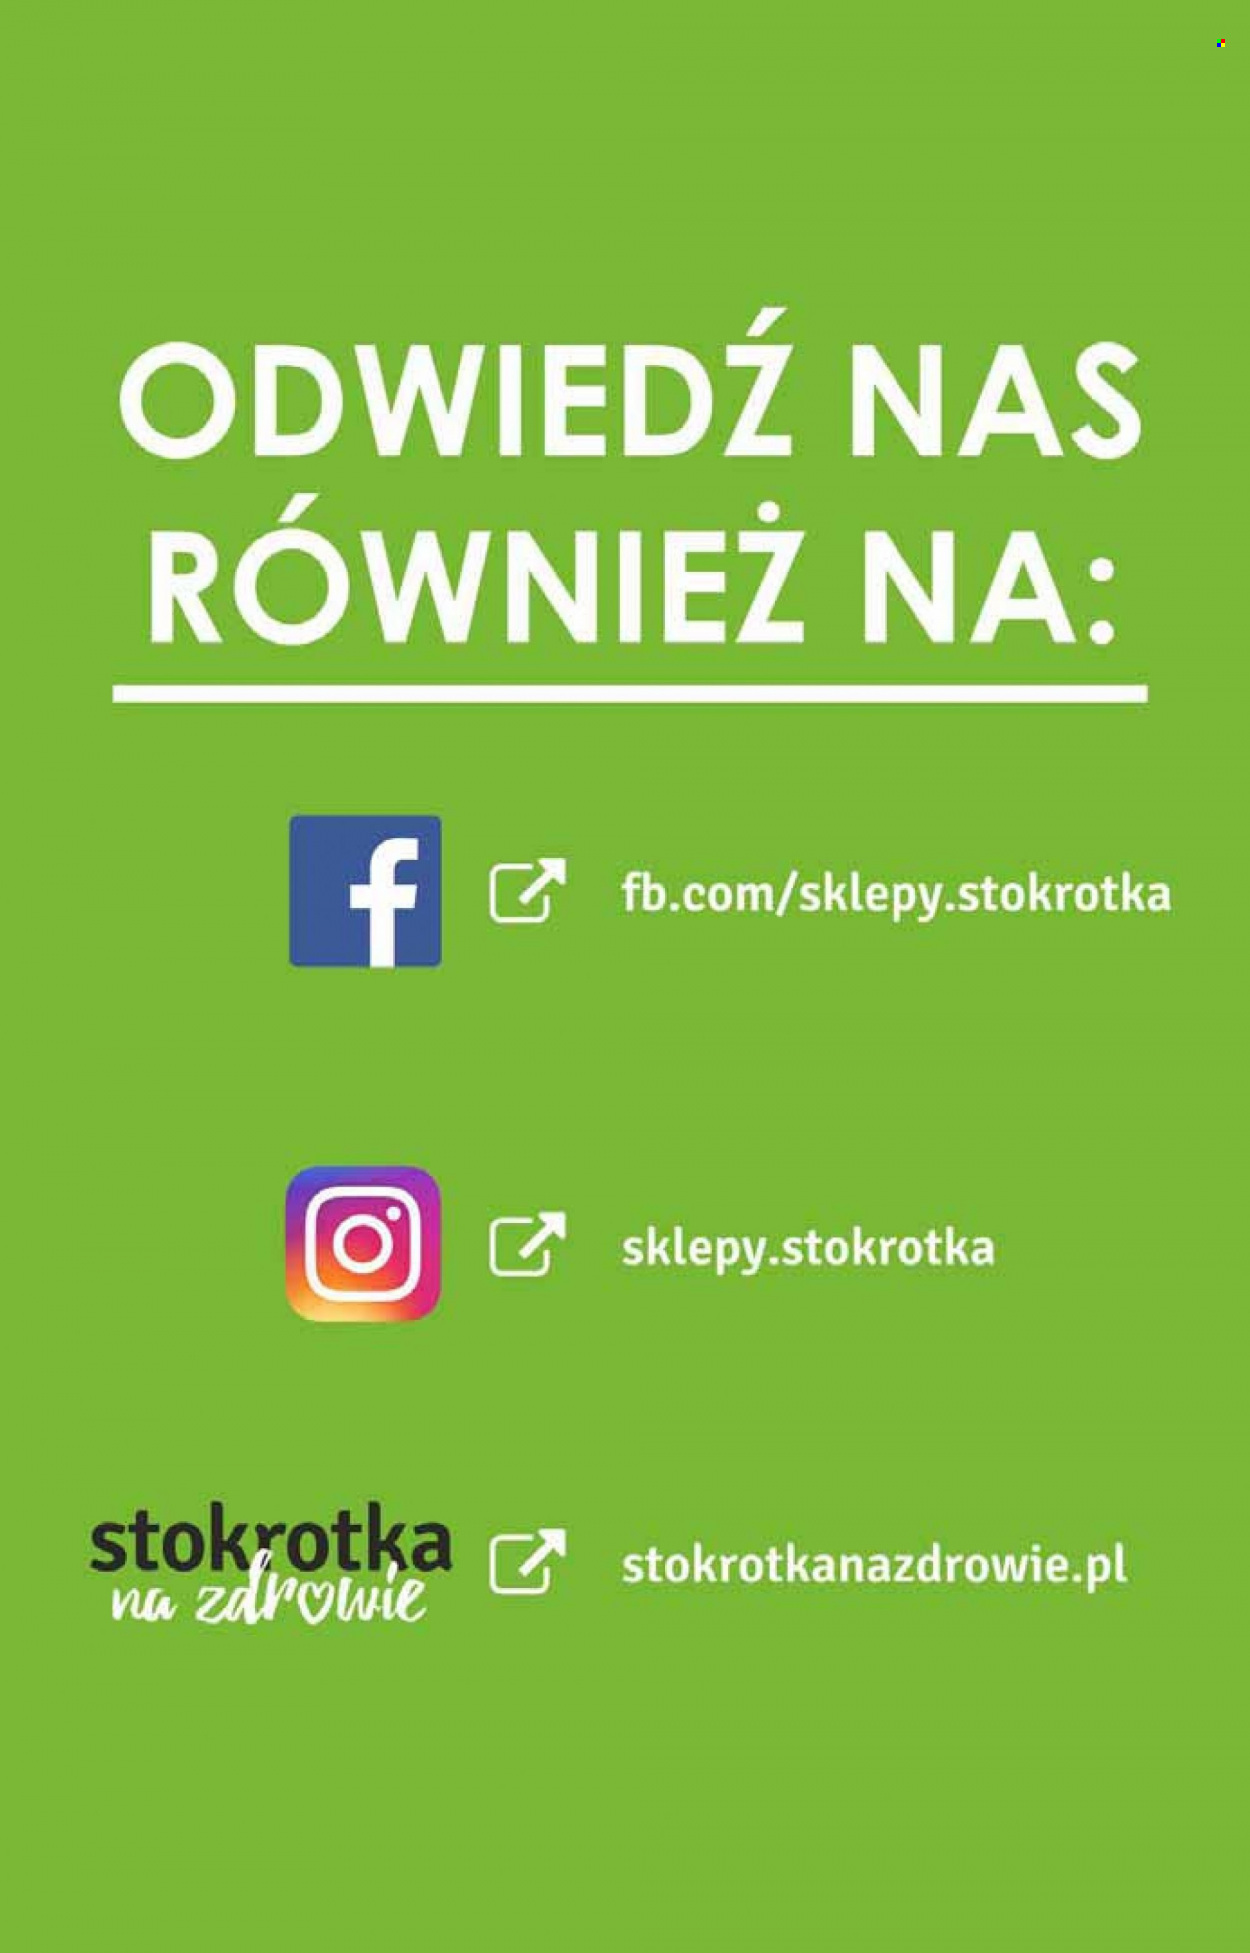 Gazetka Stokrotka Supermarket - 11.8.2022. - 17.8.2022..